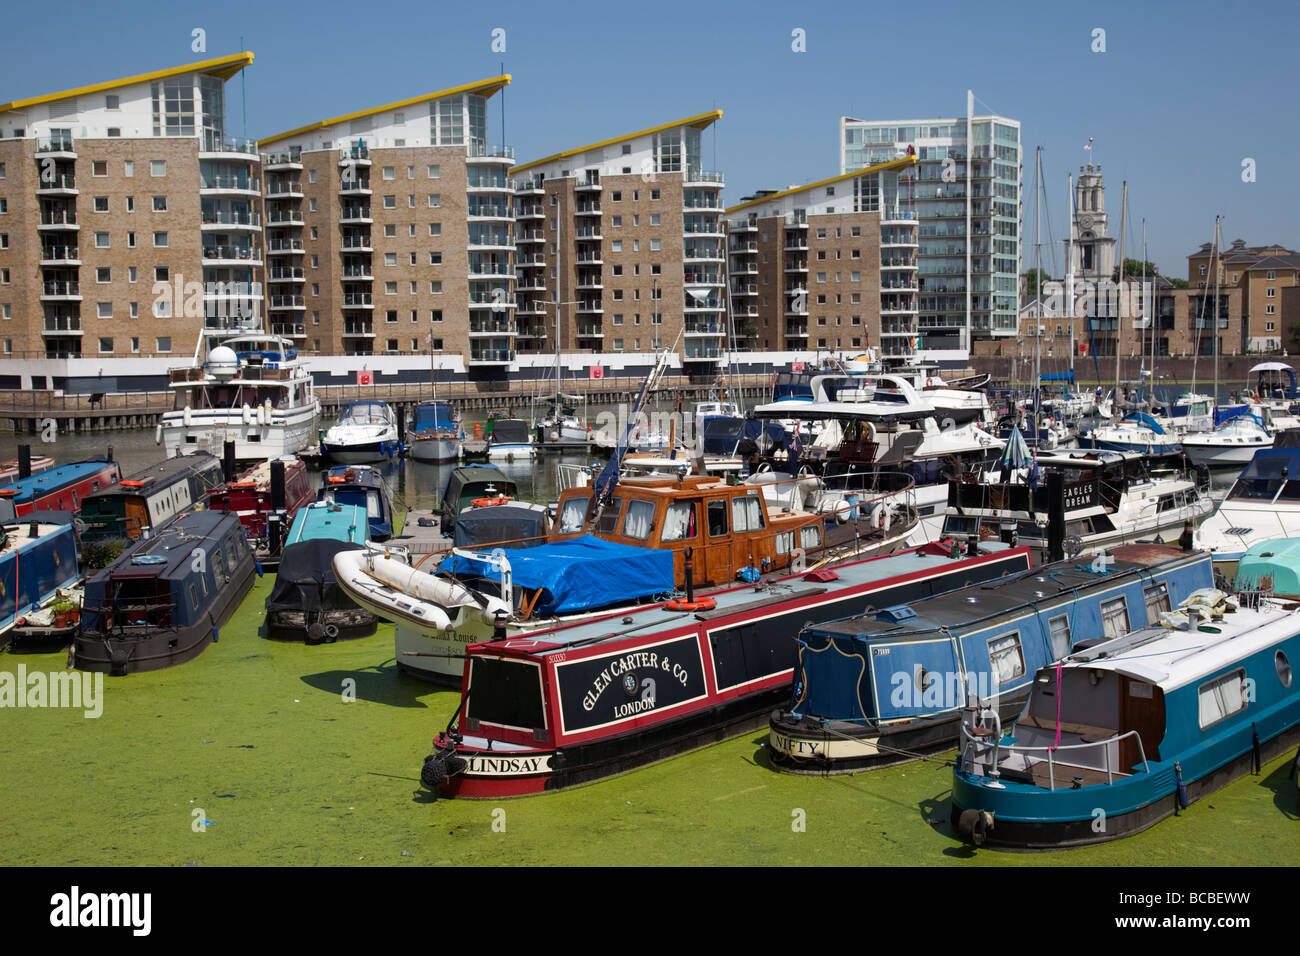 Limehouse Basin / Marina with narrow boats and duckweed Stock Photo